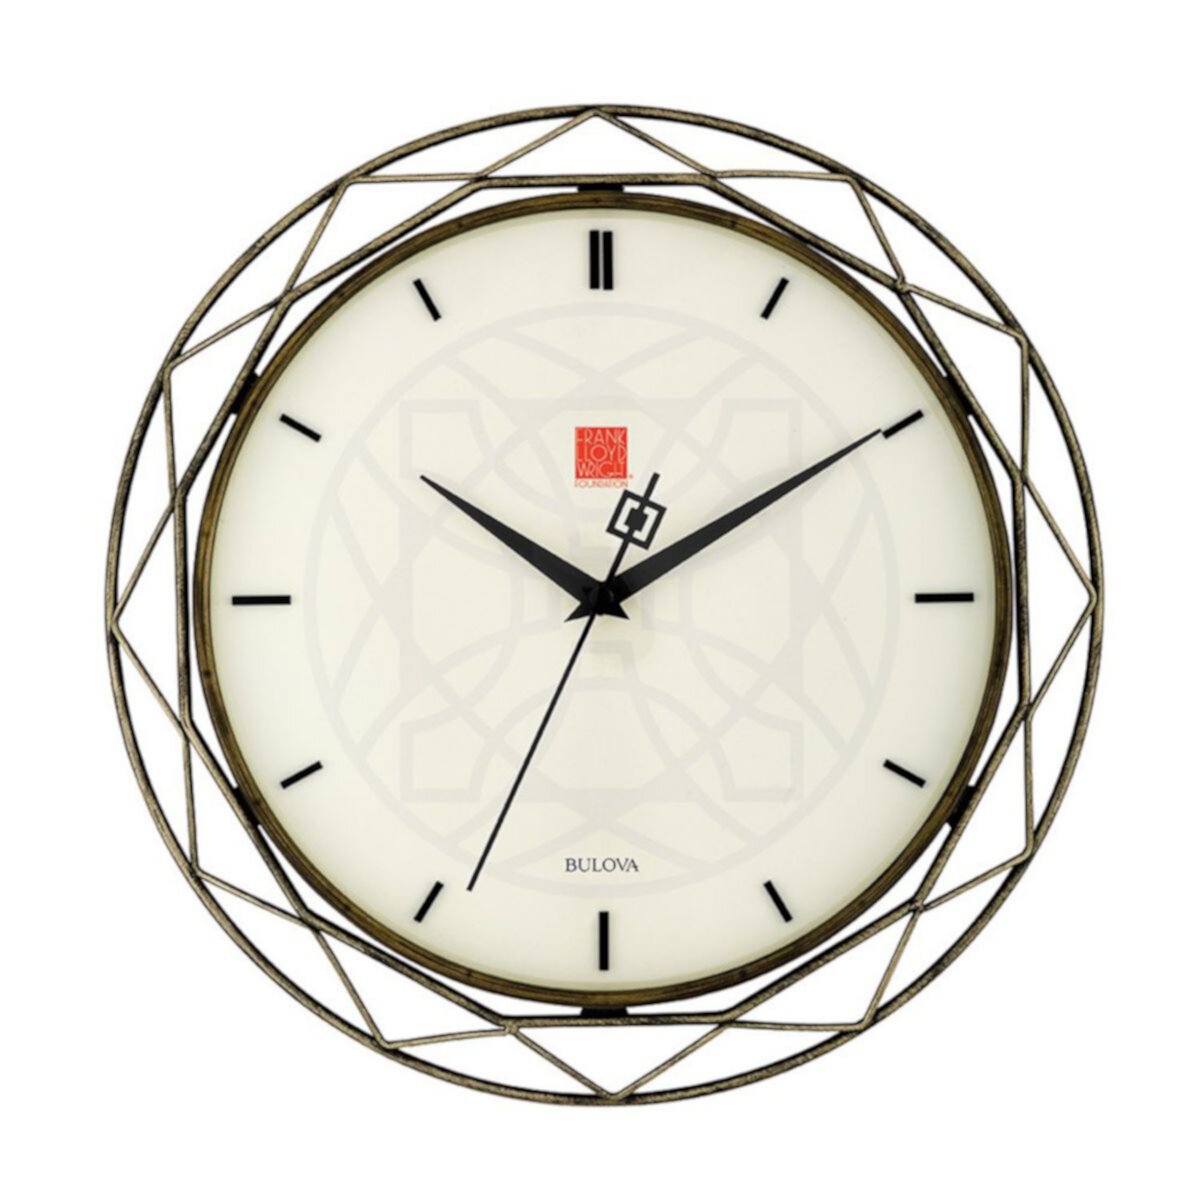 Часы 14 см. Bulova Frank Lloyd Wright часы. Часы Bulova c8671297. Часы настенные Булова. Bulova c860929.